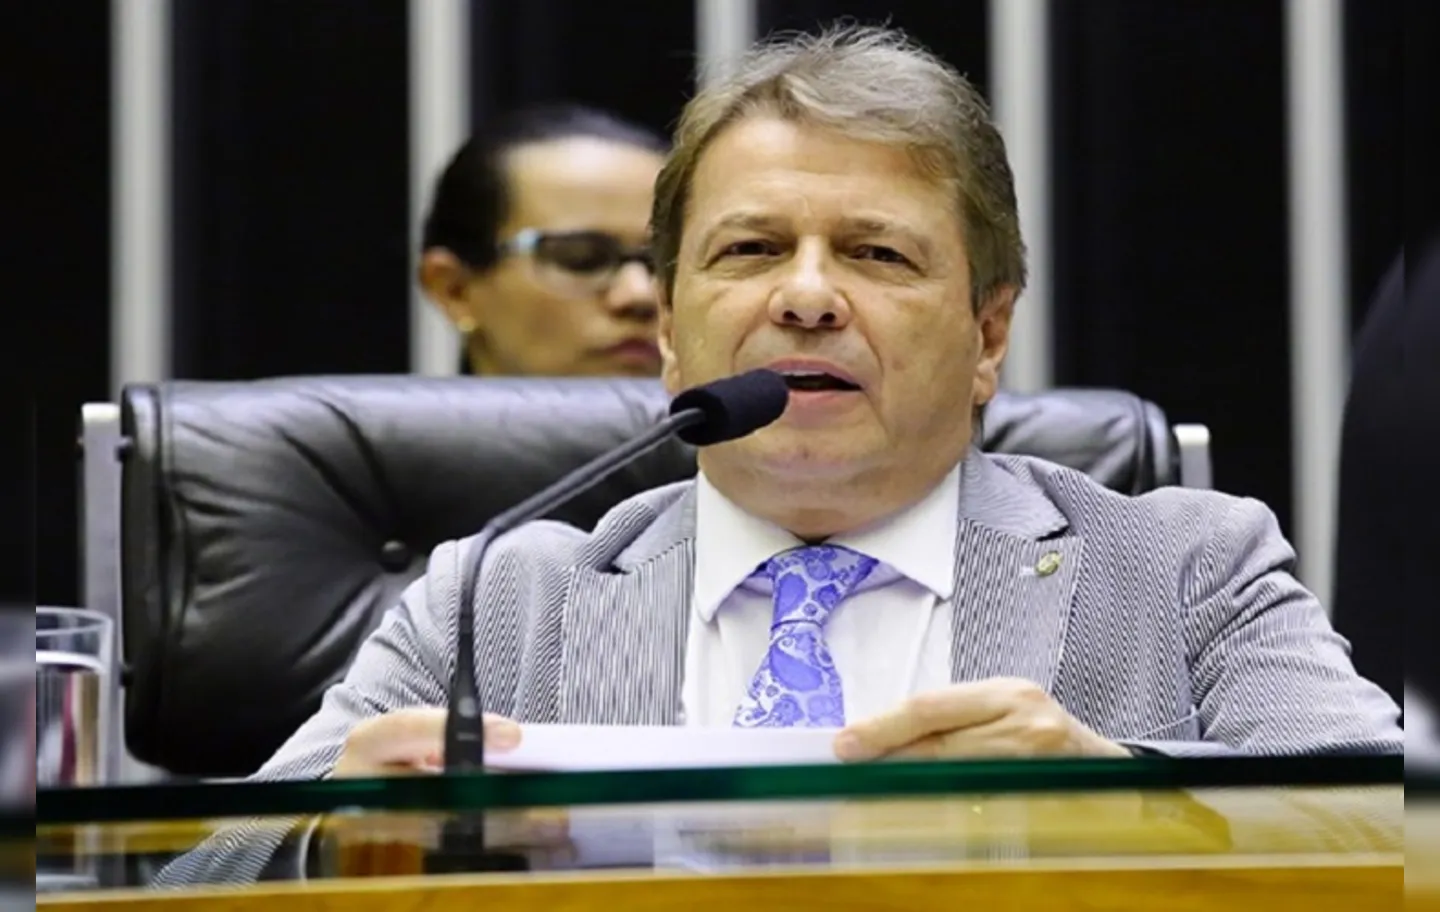 Bibo Nunes vai na contramão do discurso empreendido pelo presidente Jair Bolsonaro